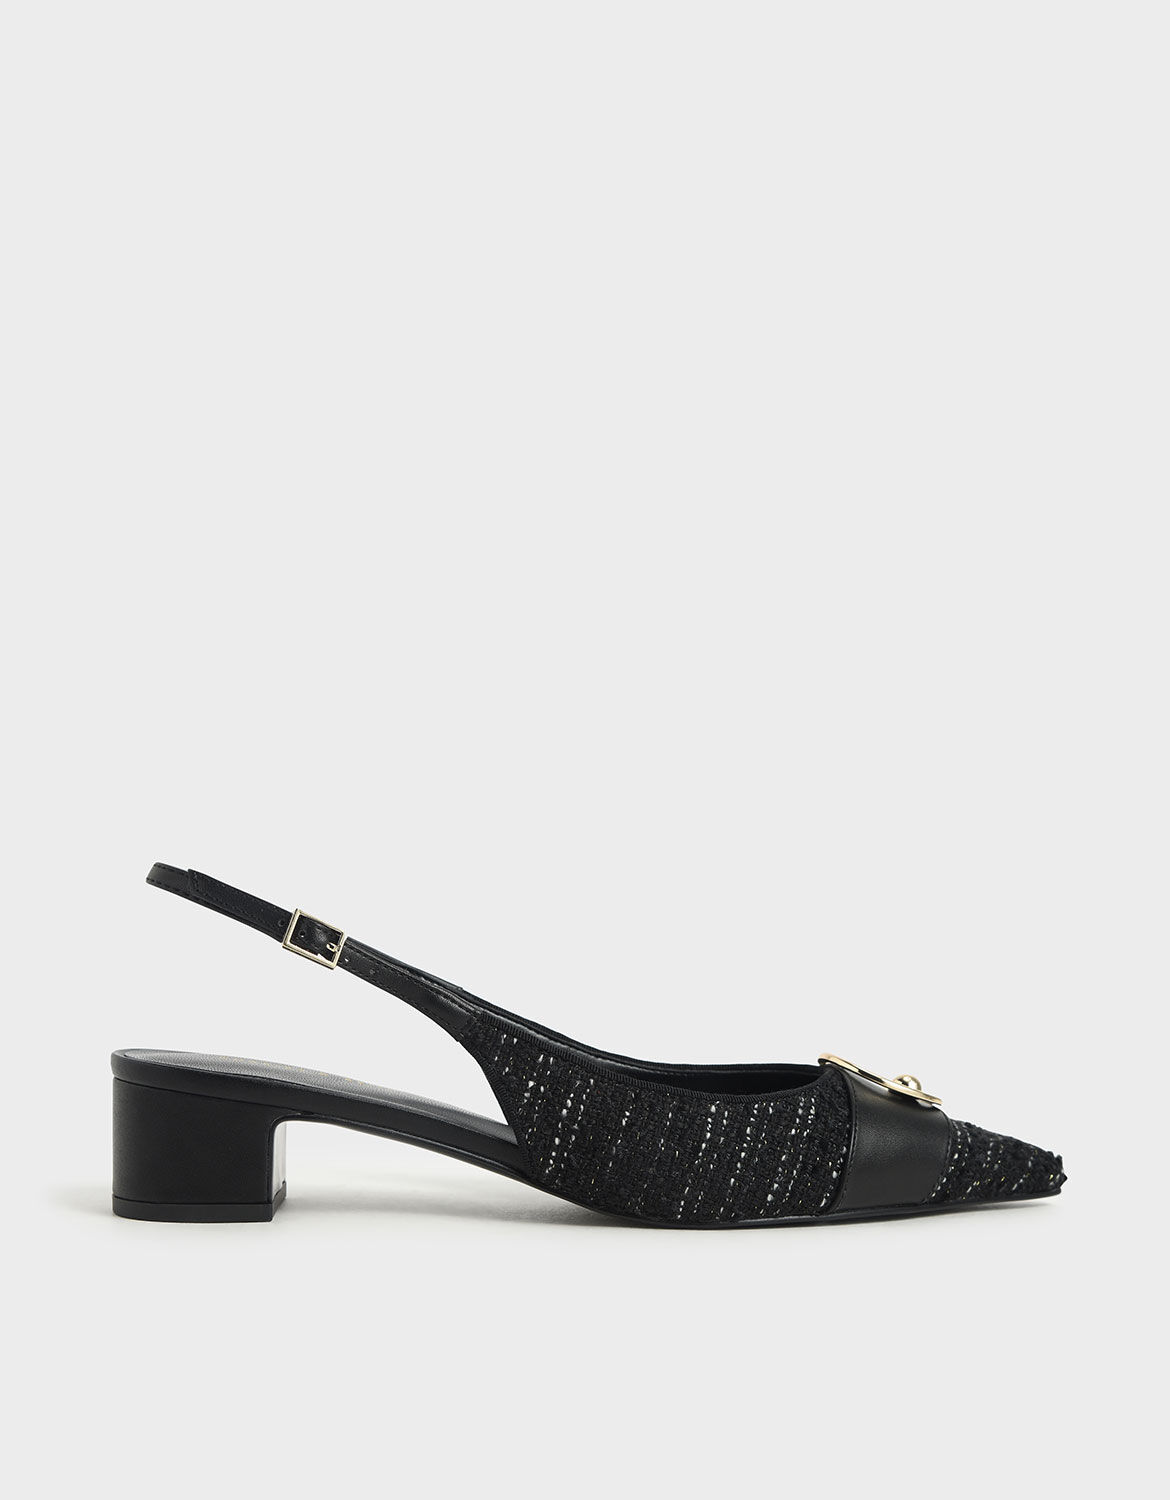 embellished black shoes